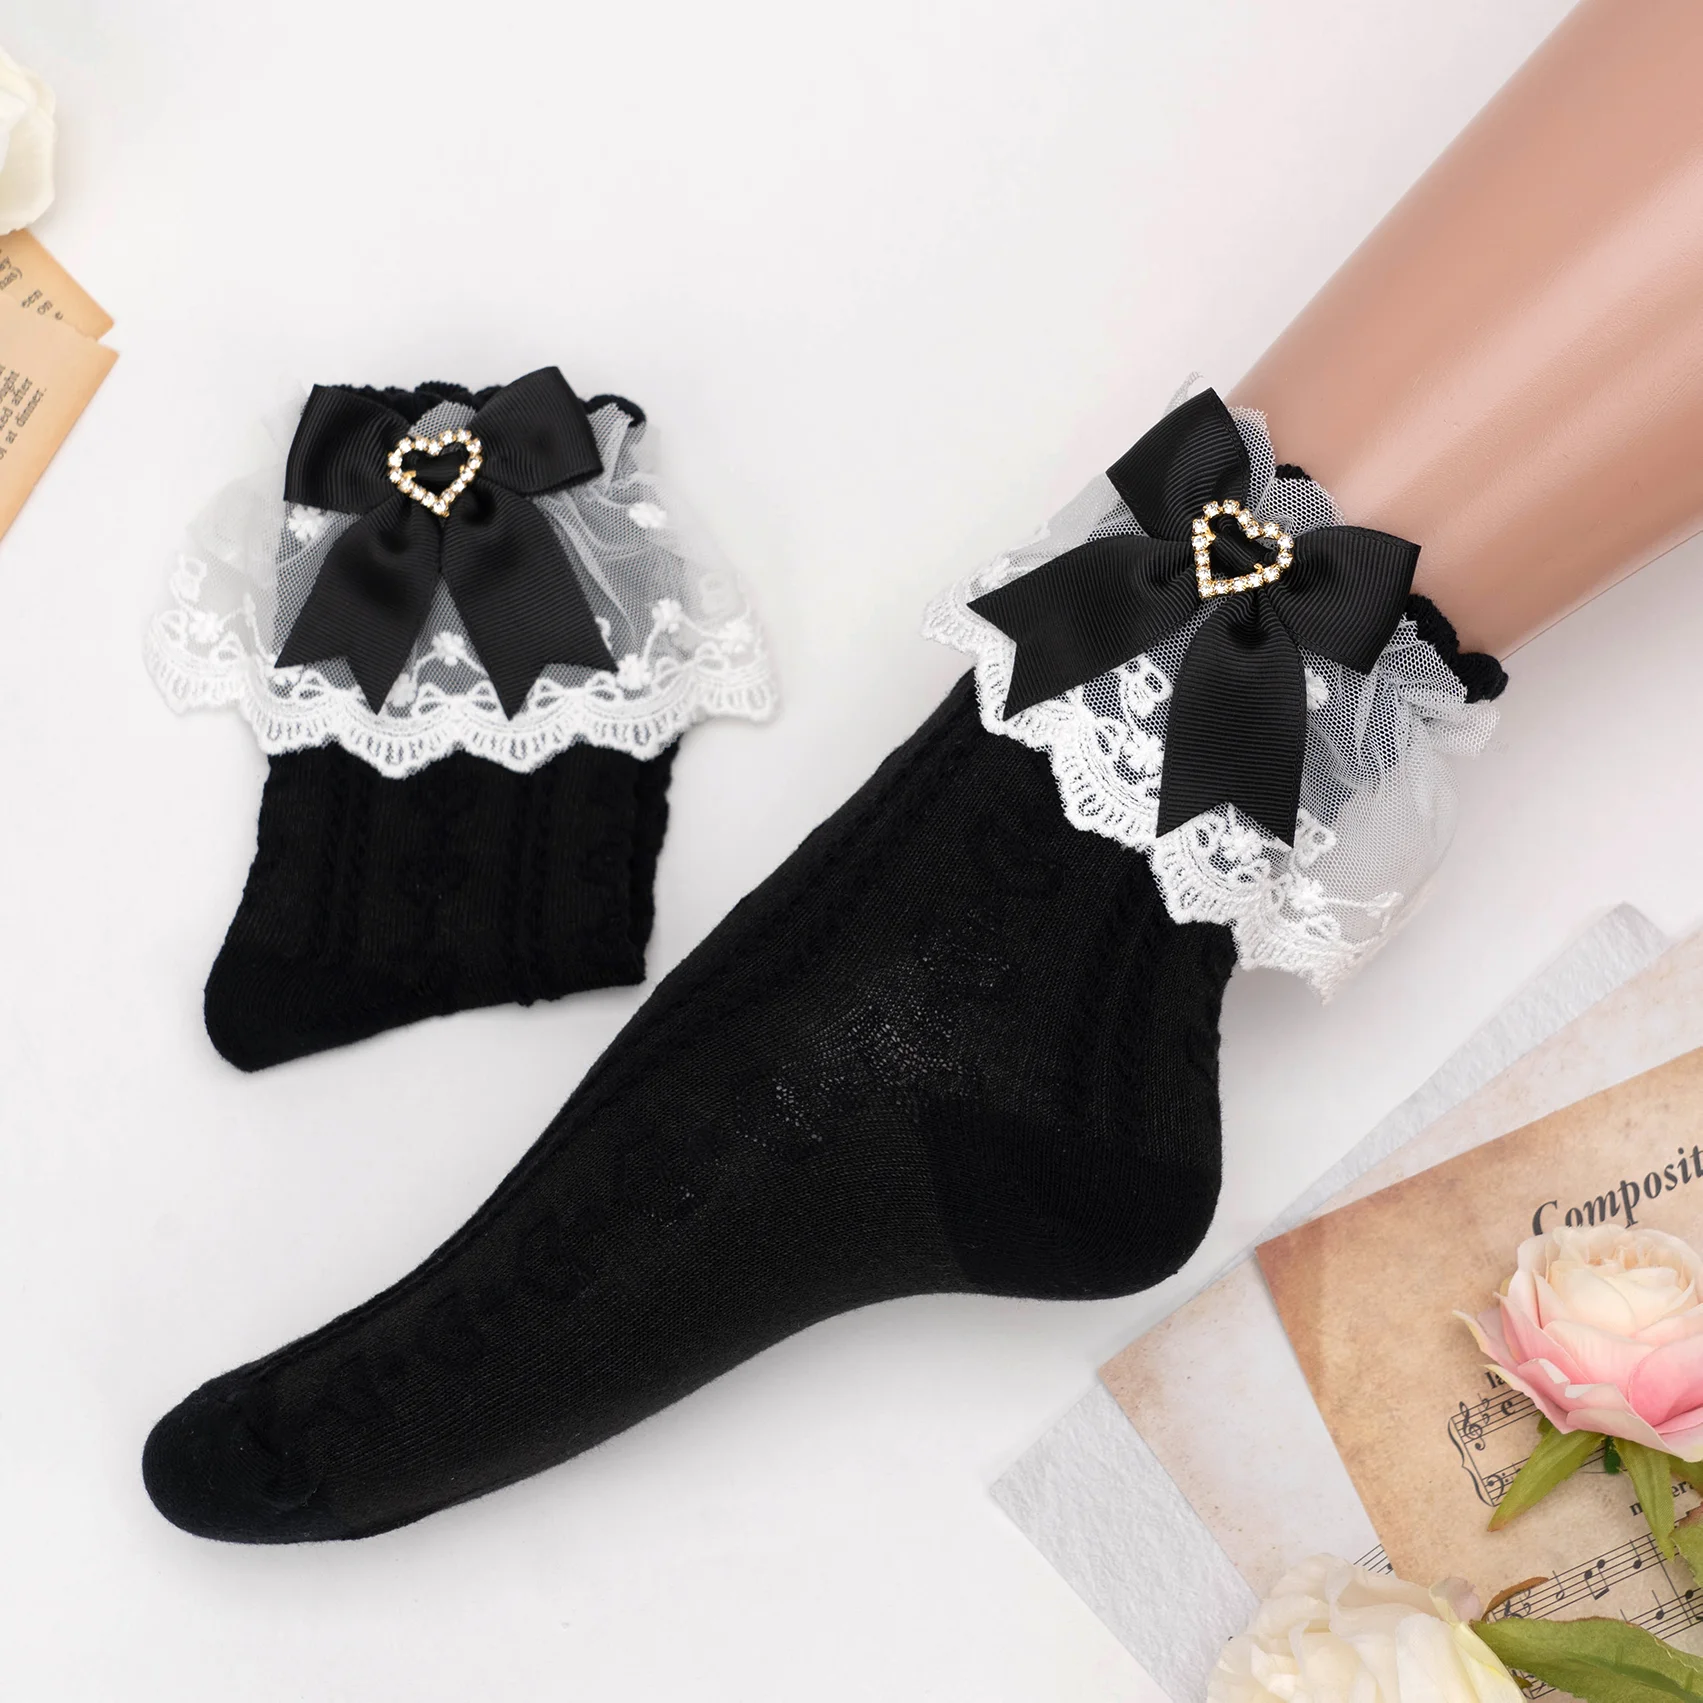 Хлопчатобумажные носки с оборками в японском стиле серии Mine серийного производства JK Love, носки с темным узором и бантиком, чулки для милой кавайной девушки в стиле Лолиты Изображение 1 